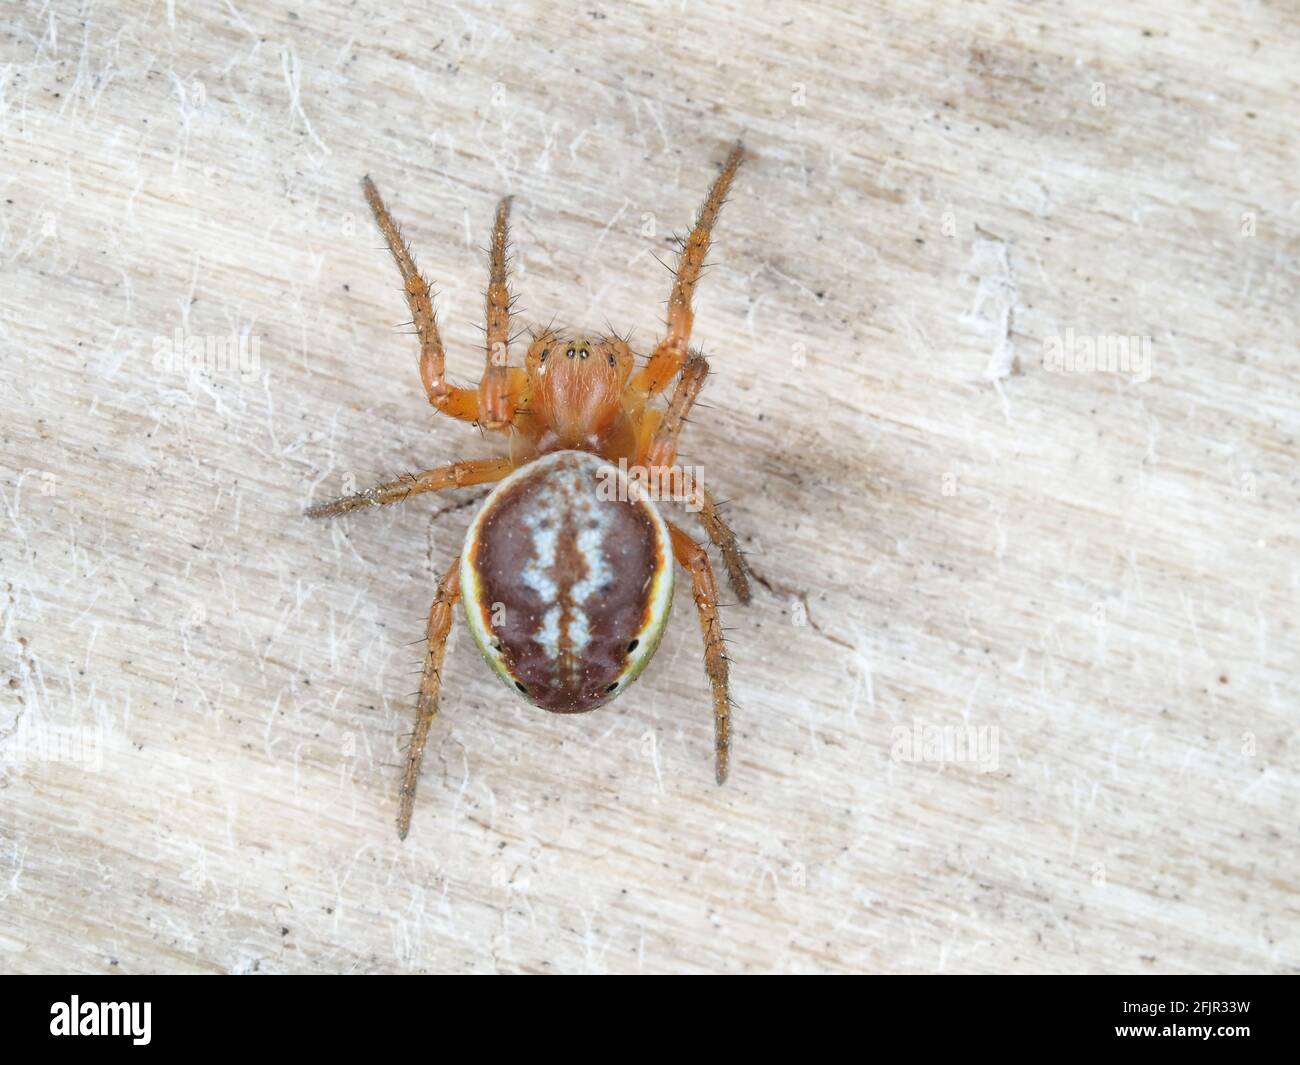 Araniella dischicata, le sixacheted orbweaver - photographie de macro d'araignée Banque D'Images